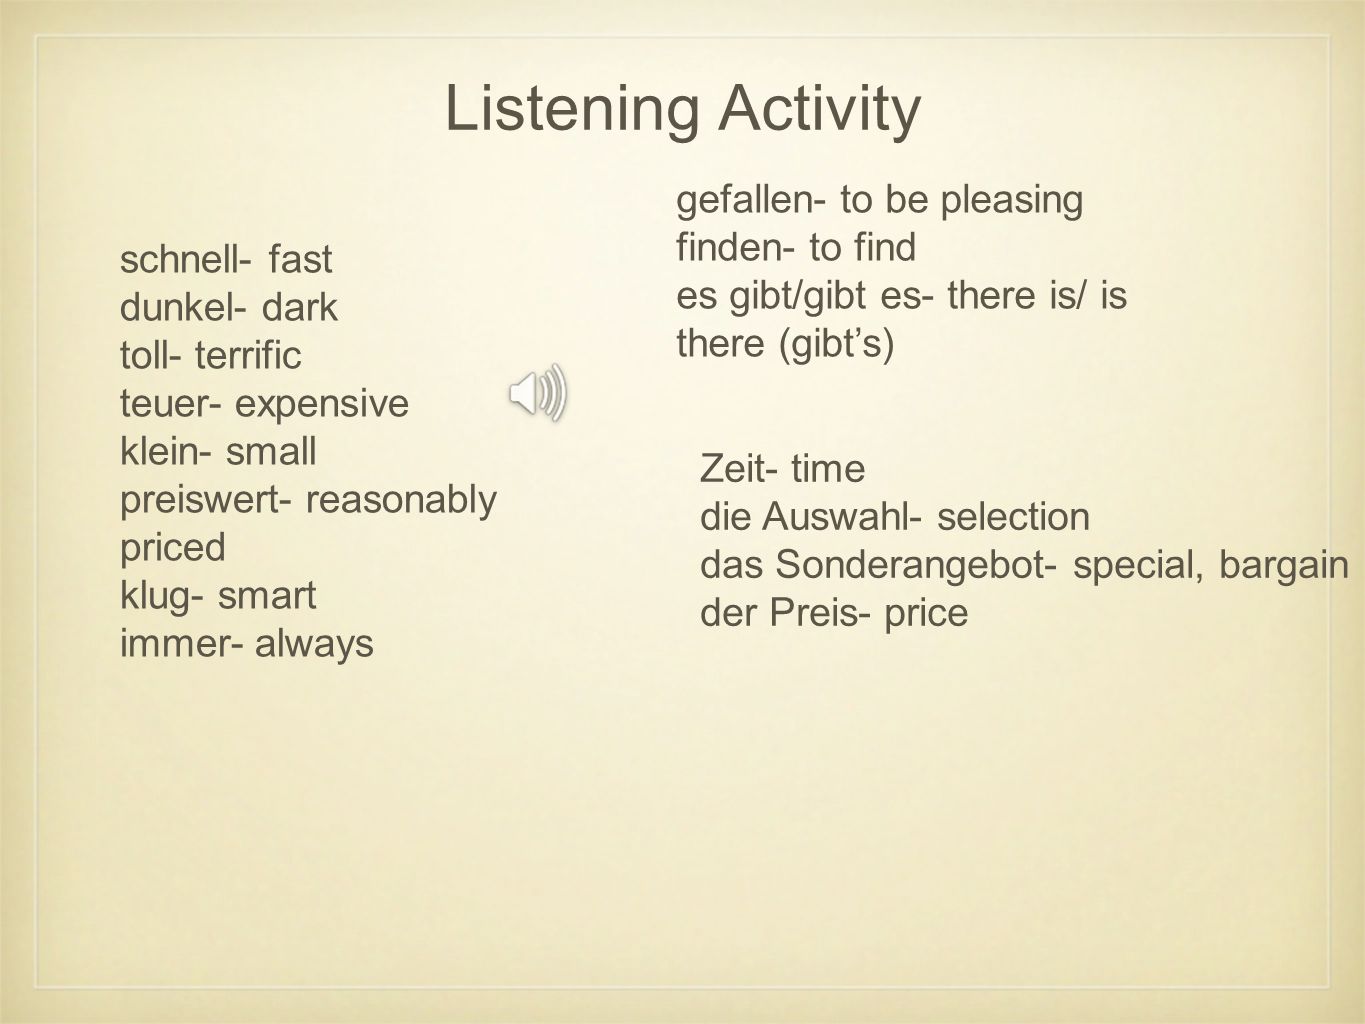 Listening Activity gefallen- to be pleasing finden- to find